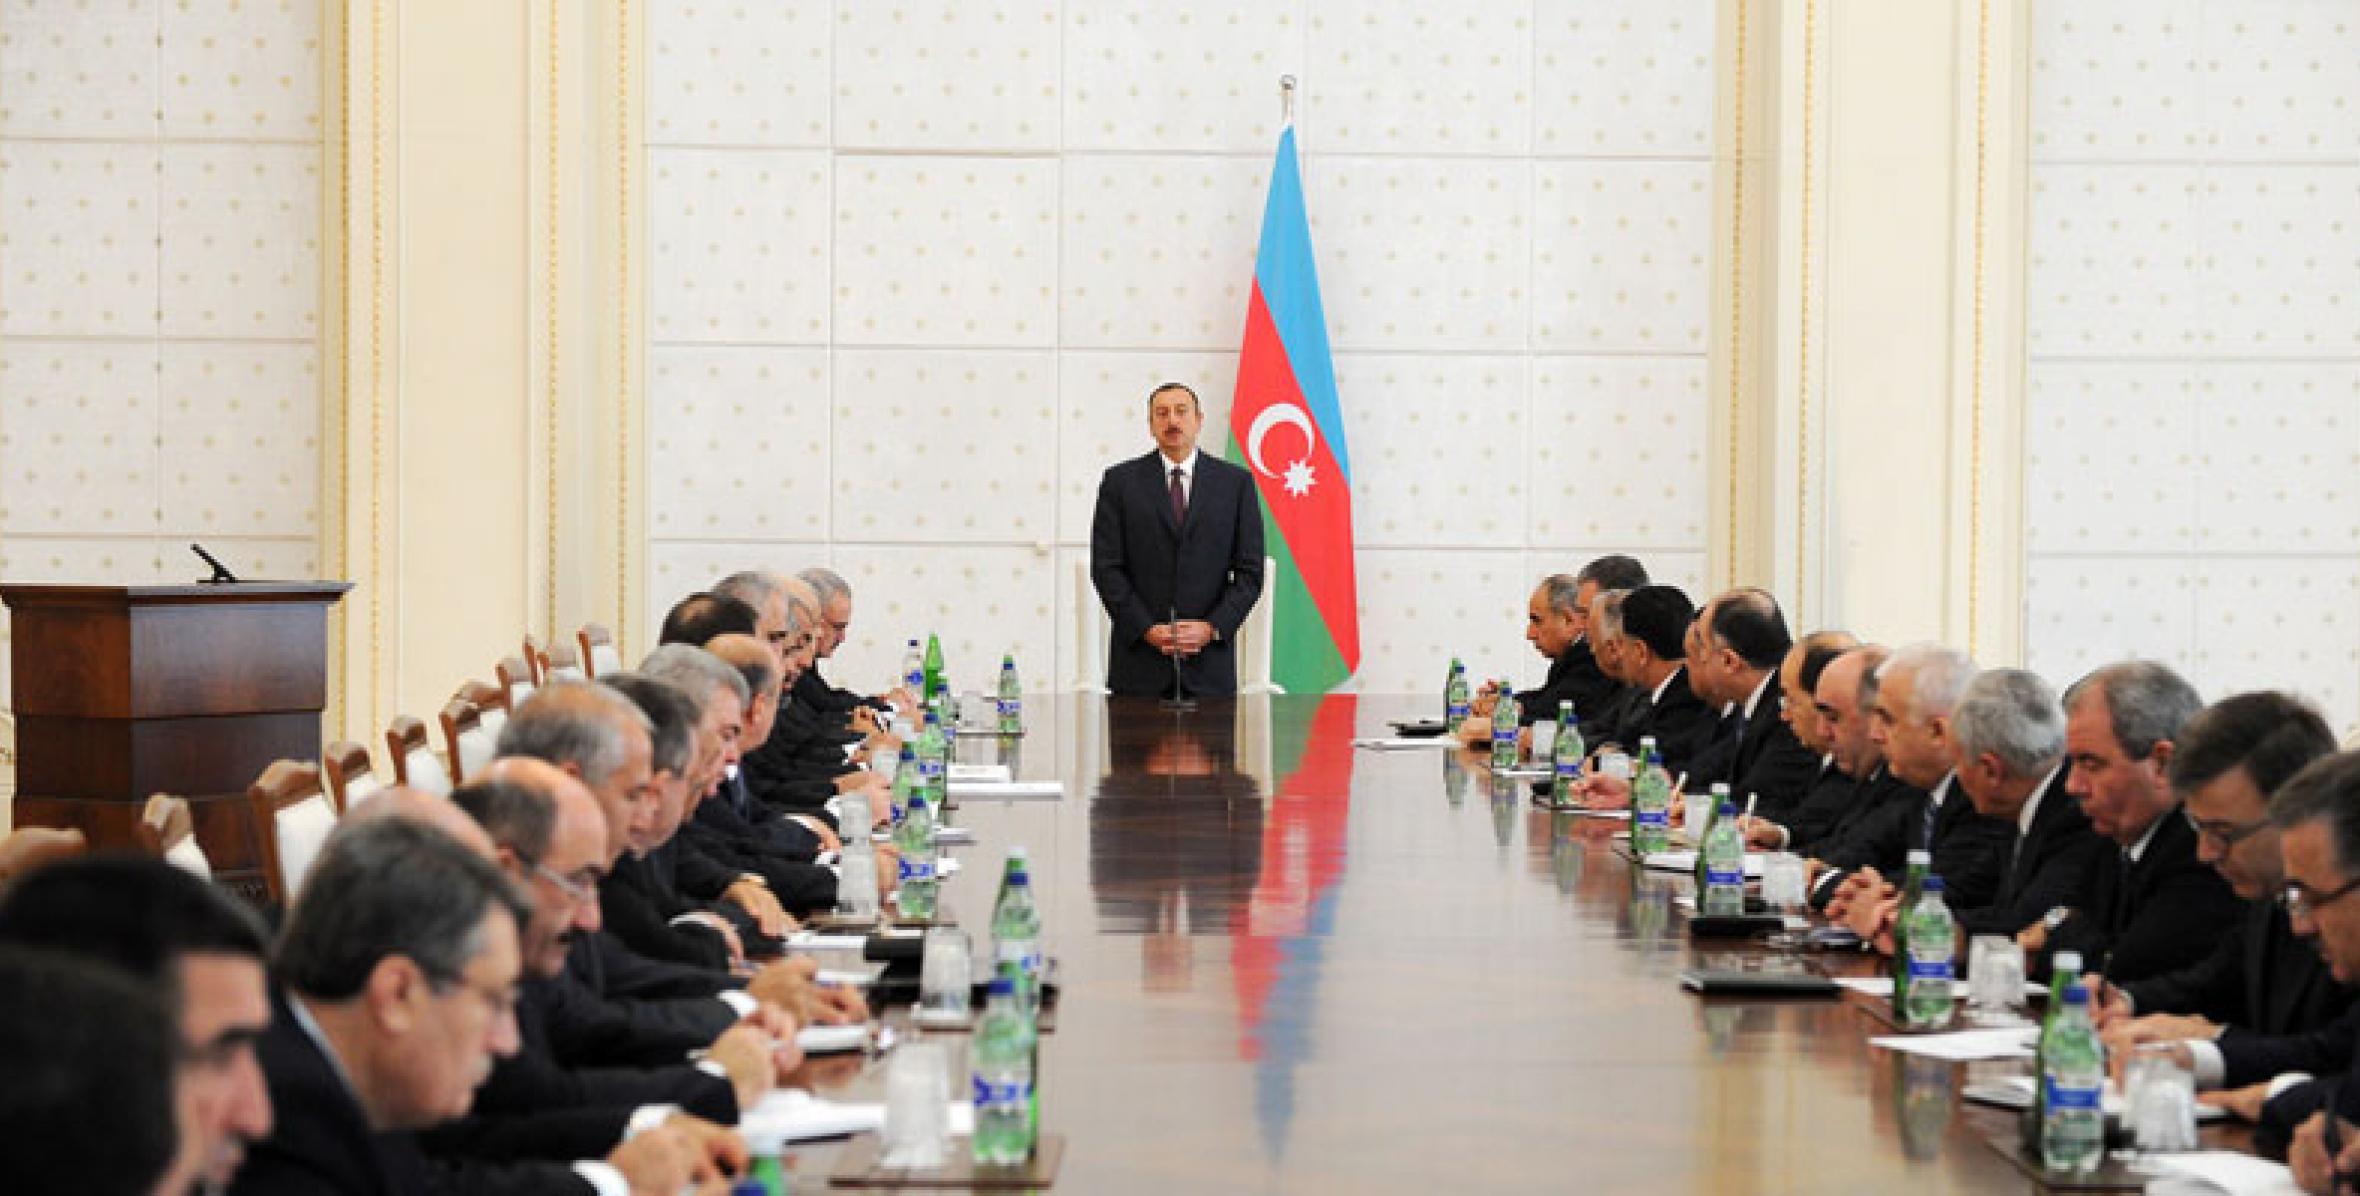 Заключительная речь Ильхама Алиева на заседании Кабинета Министров, посвященное итогам социально-экономического развития за девять месяцев 2010 года